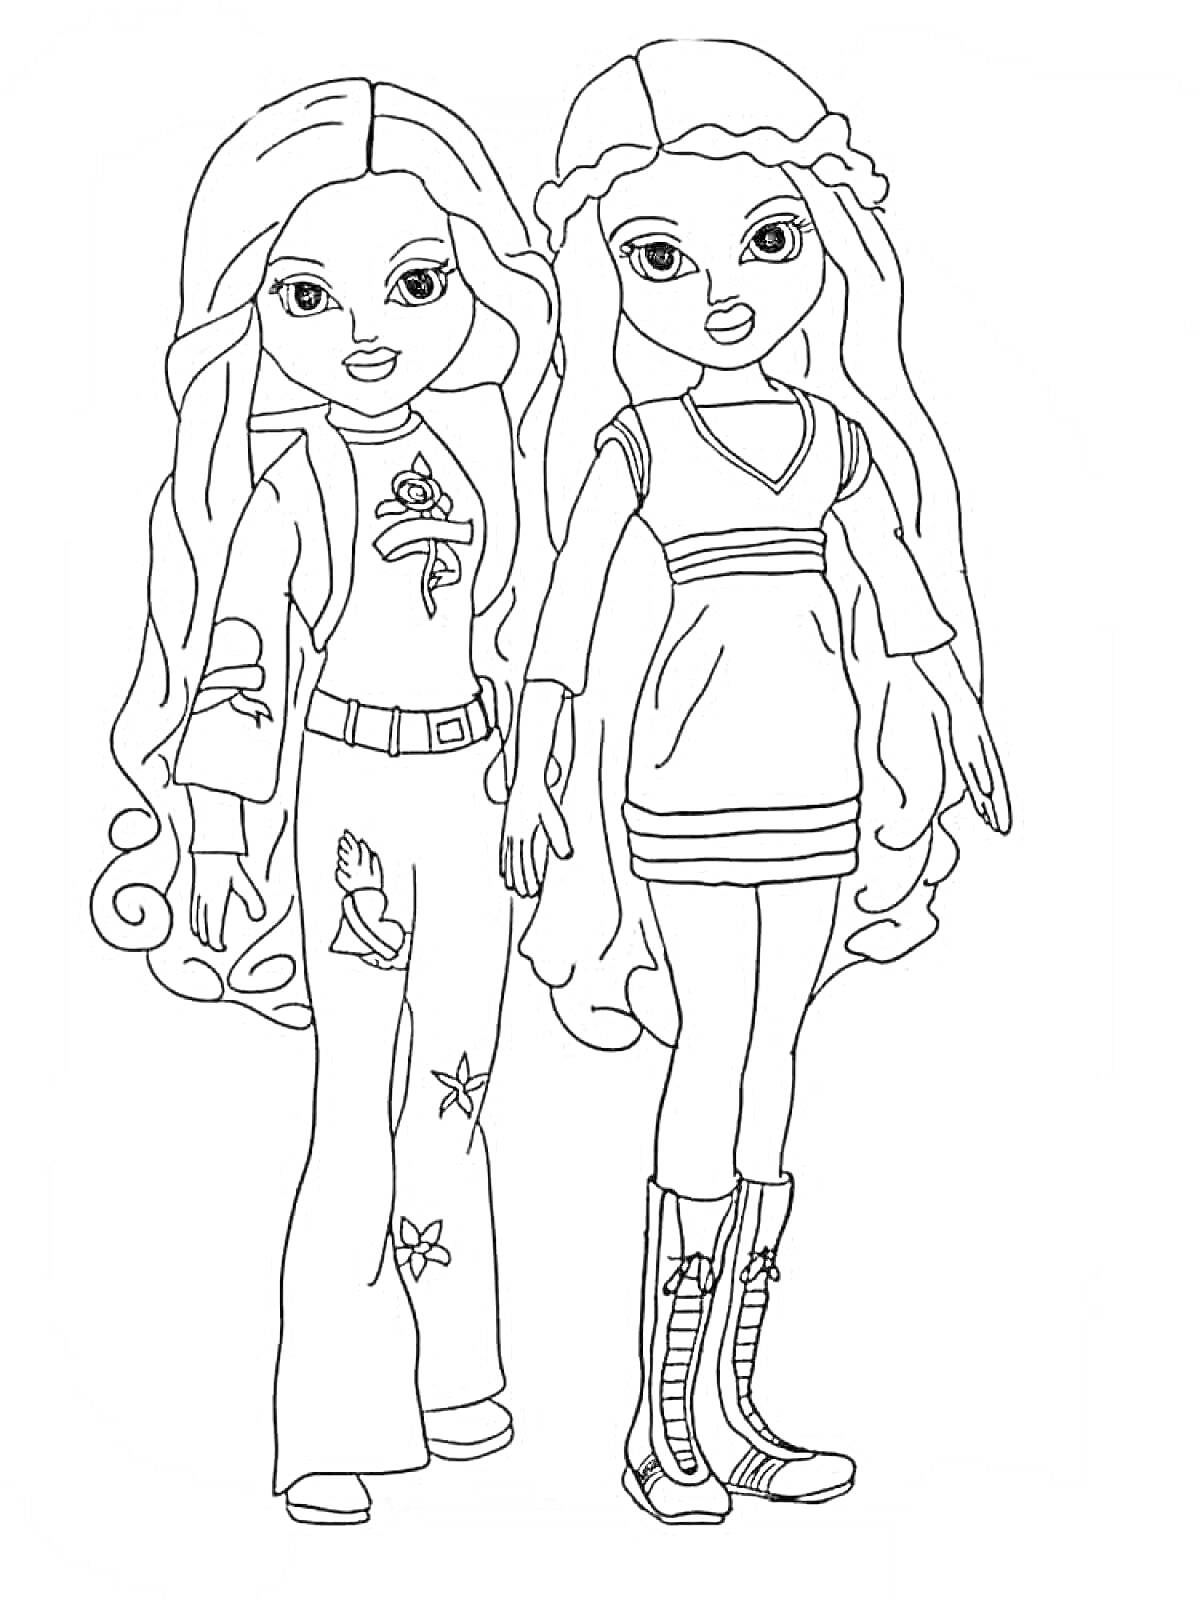 Две девушки-модели с длинными волосами, украшениями на одежде и обуви